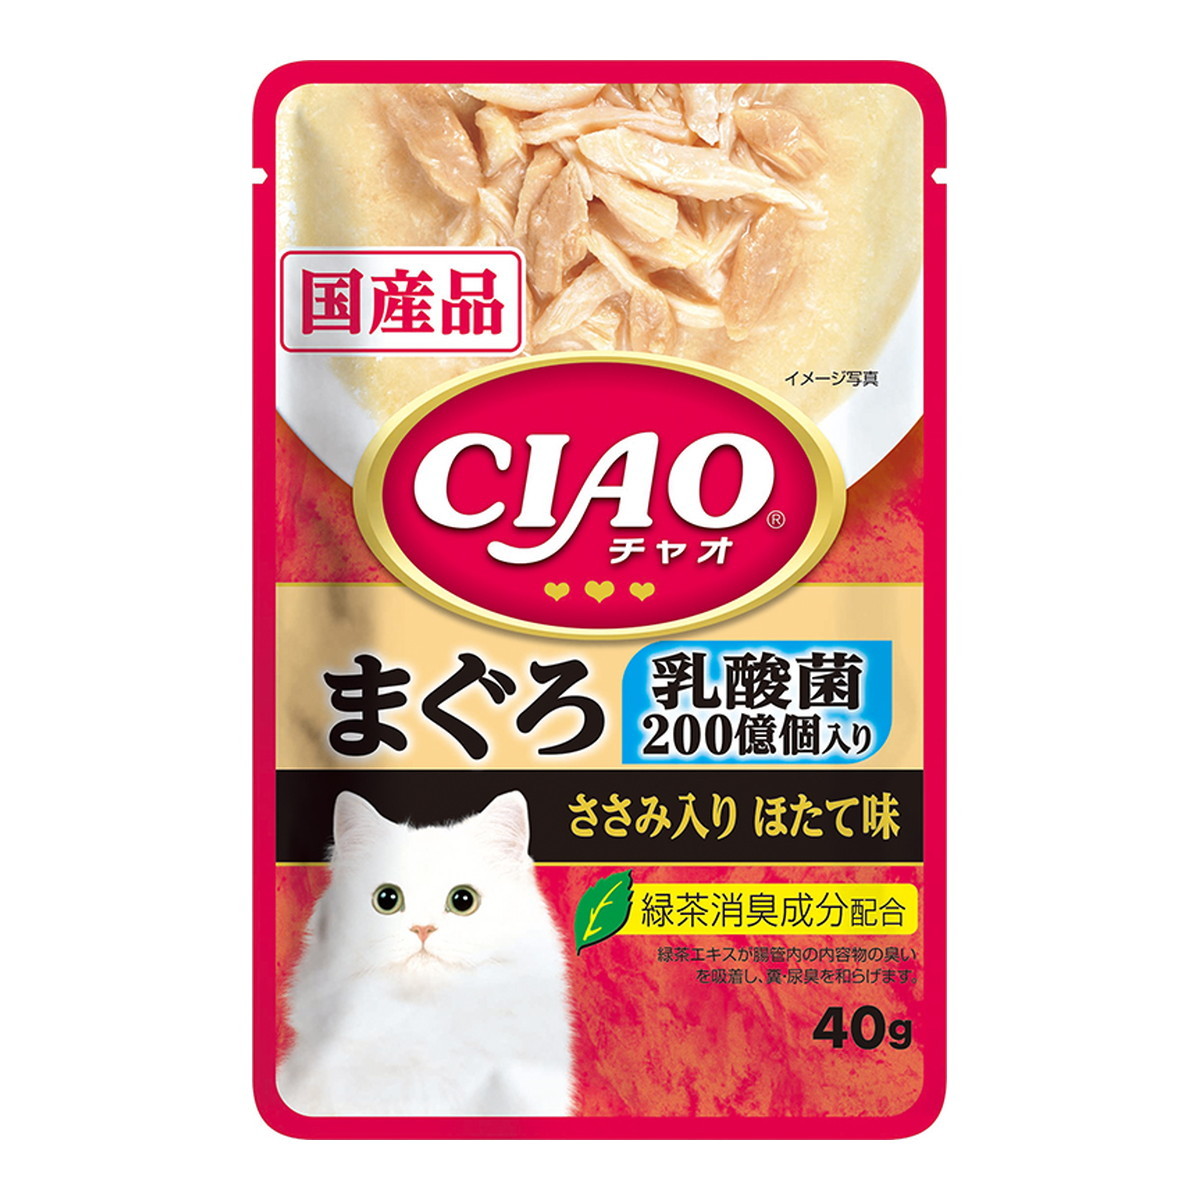 いなばペットフード CIAO パウチ 乳酸菌入り まぐろ ささみ入り ほたて味 IC-326 40g×10個 CIAO（いなばペットフード） 猫缶、ウエットフードの商品画像